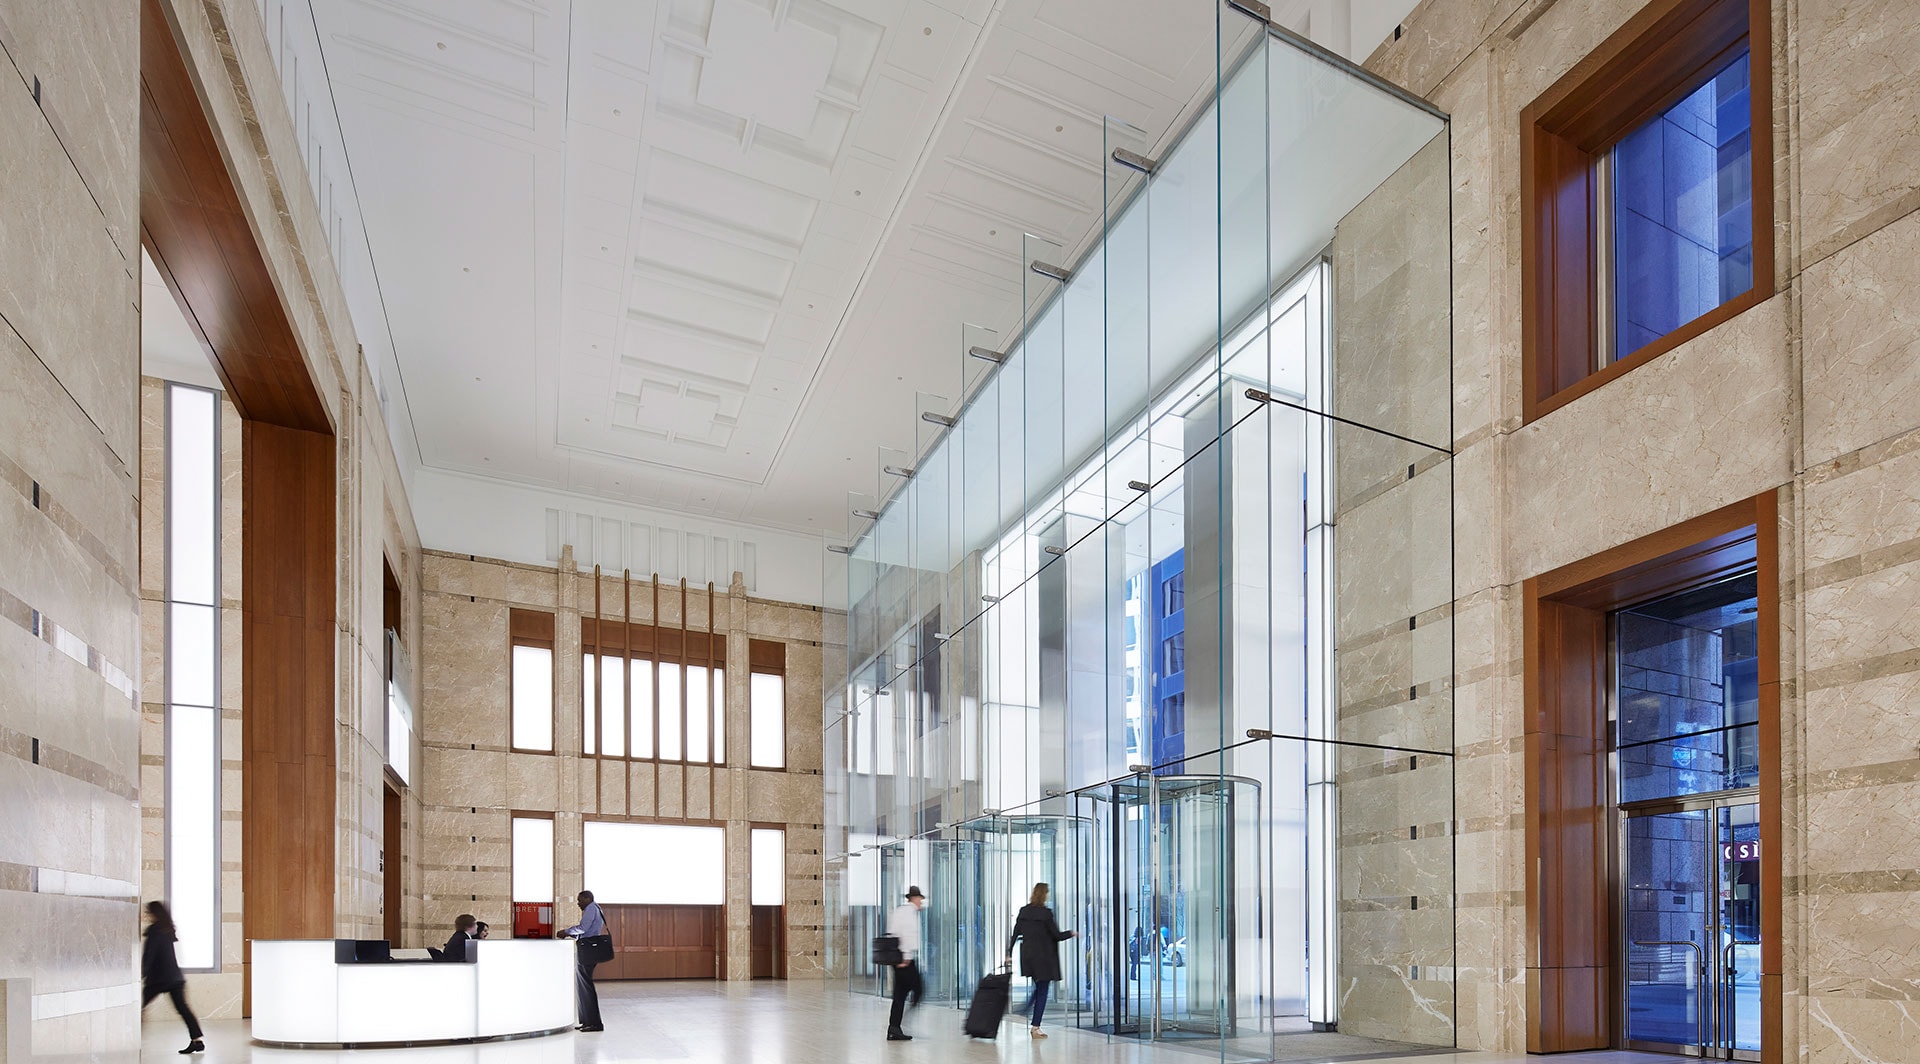 Louis Vuitton Wynn  Sentech Architectural Systems